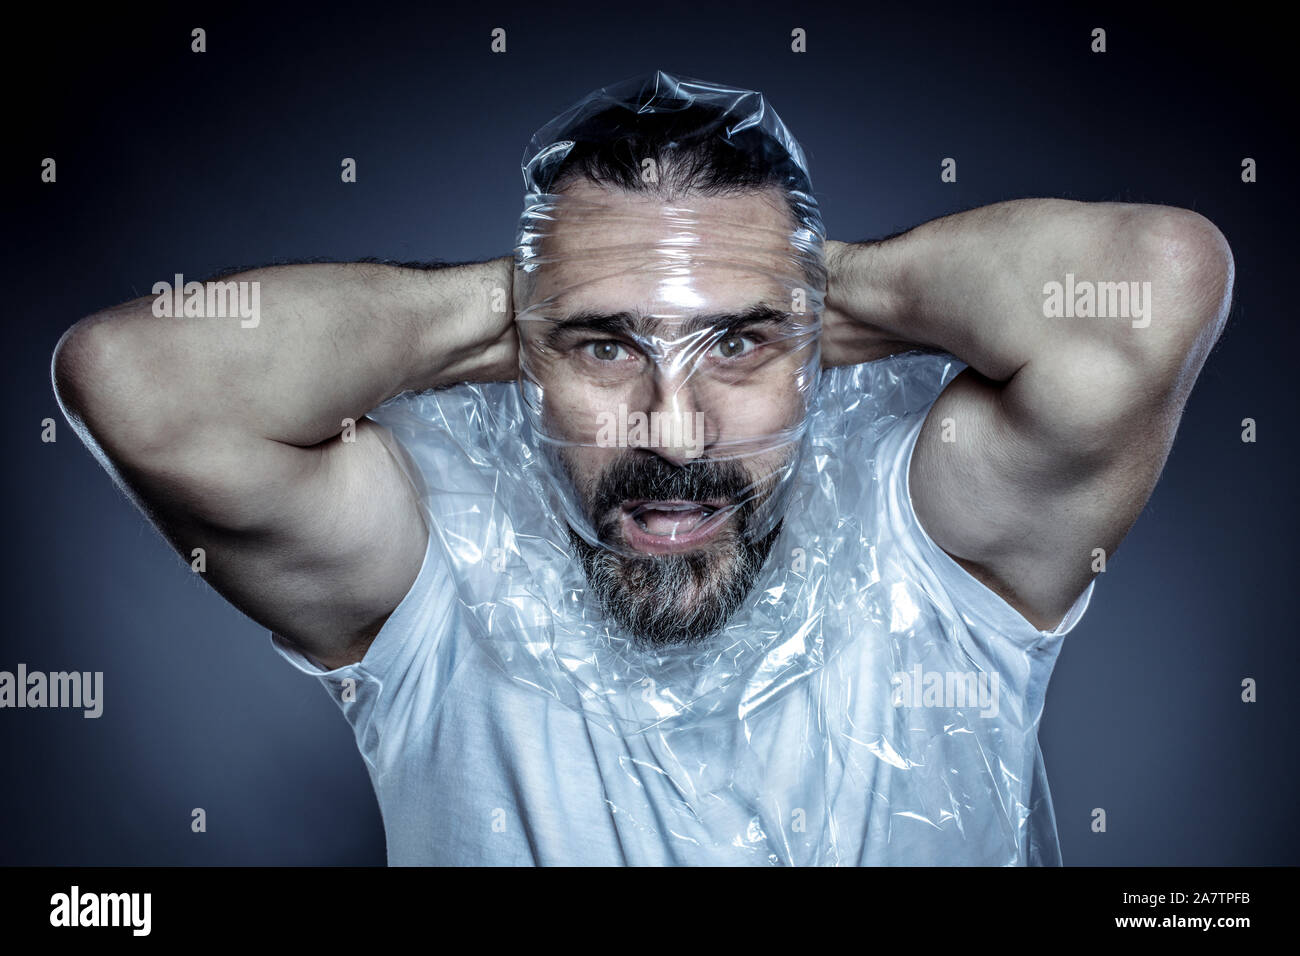 Portrait d'un homme avec une barbe et son visage enveloppé dans un film plastique. concept de toxicité des matériaux plastiques et leur utilisation excessive dans la vie commune Banque D'Images